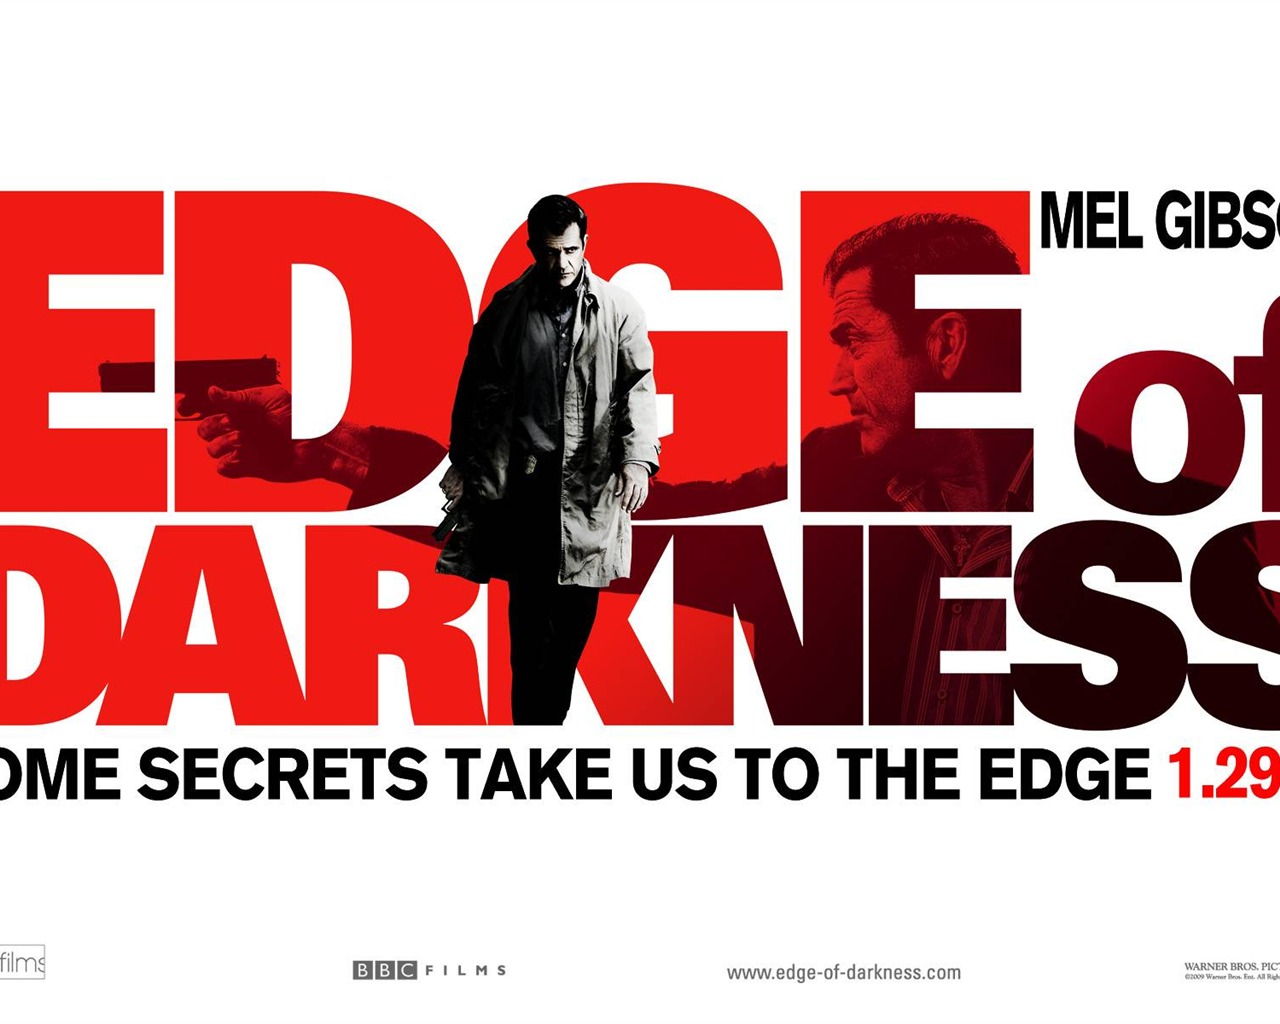 Edge of Darkness HD papel tapiz #16 - 1280x1024